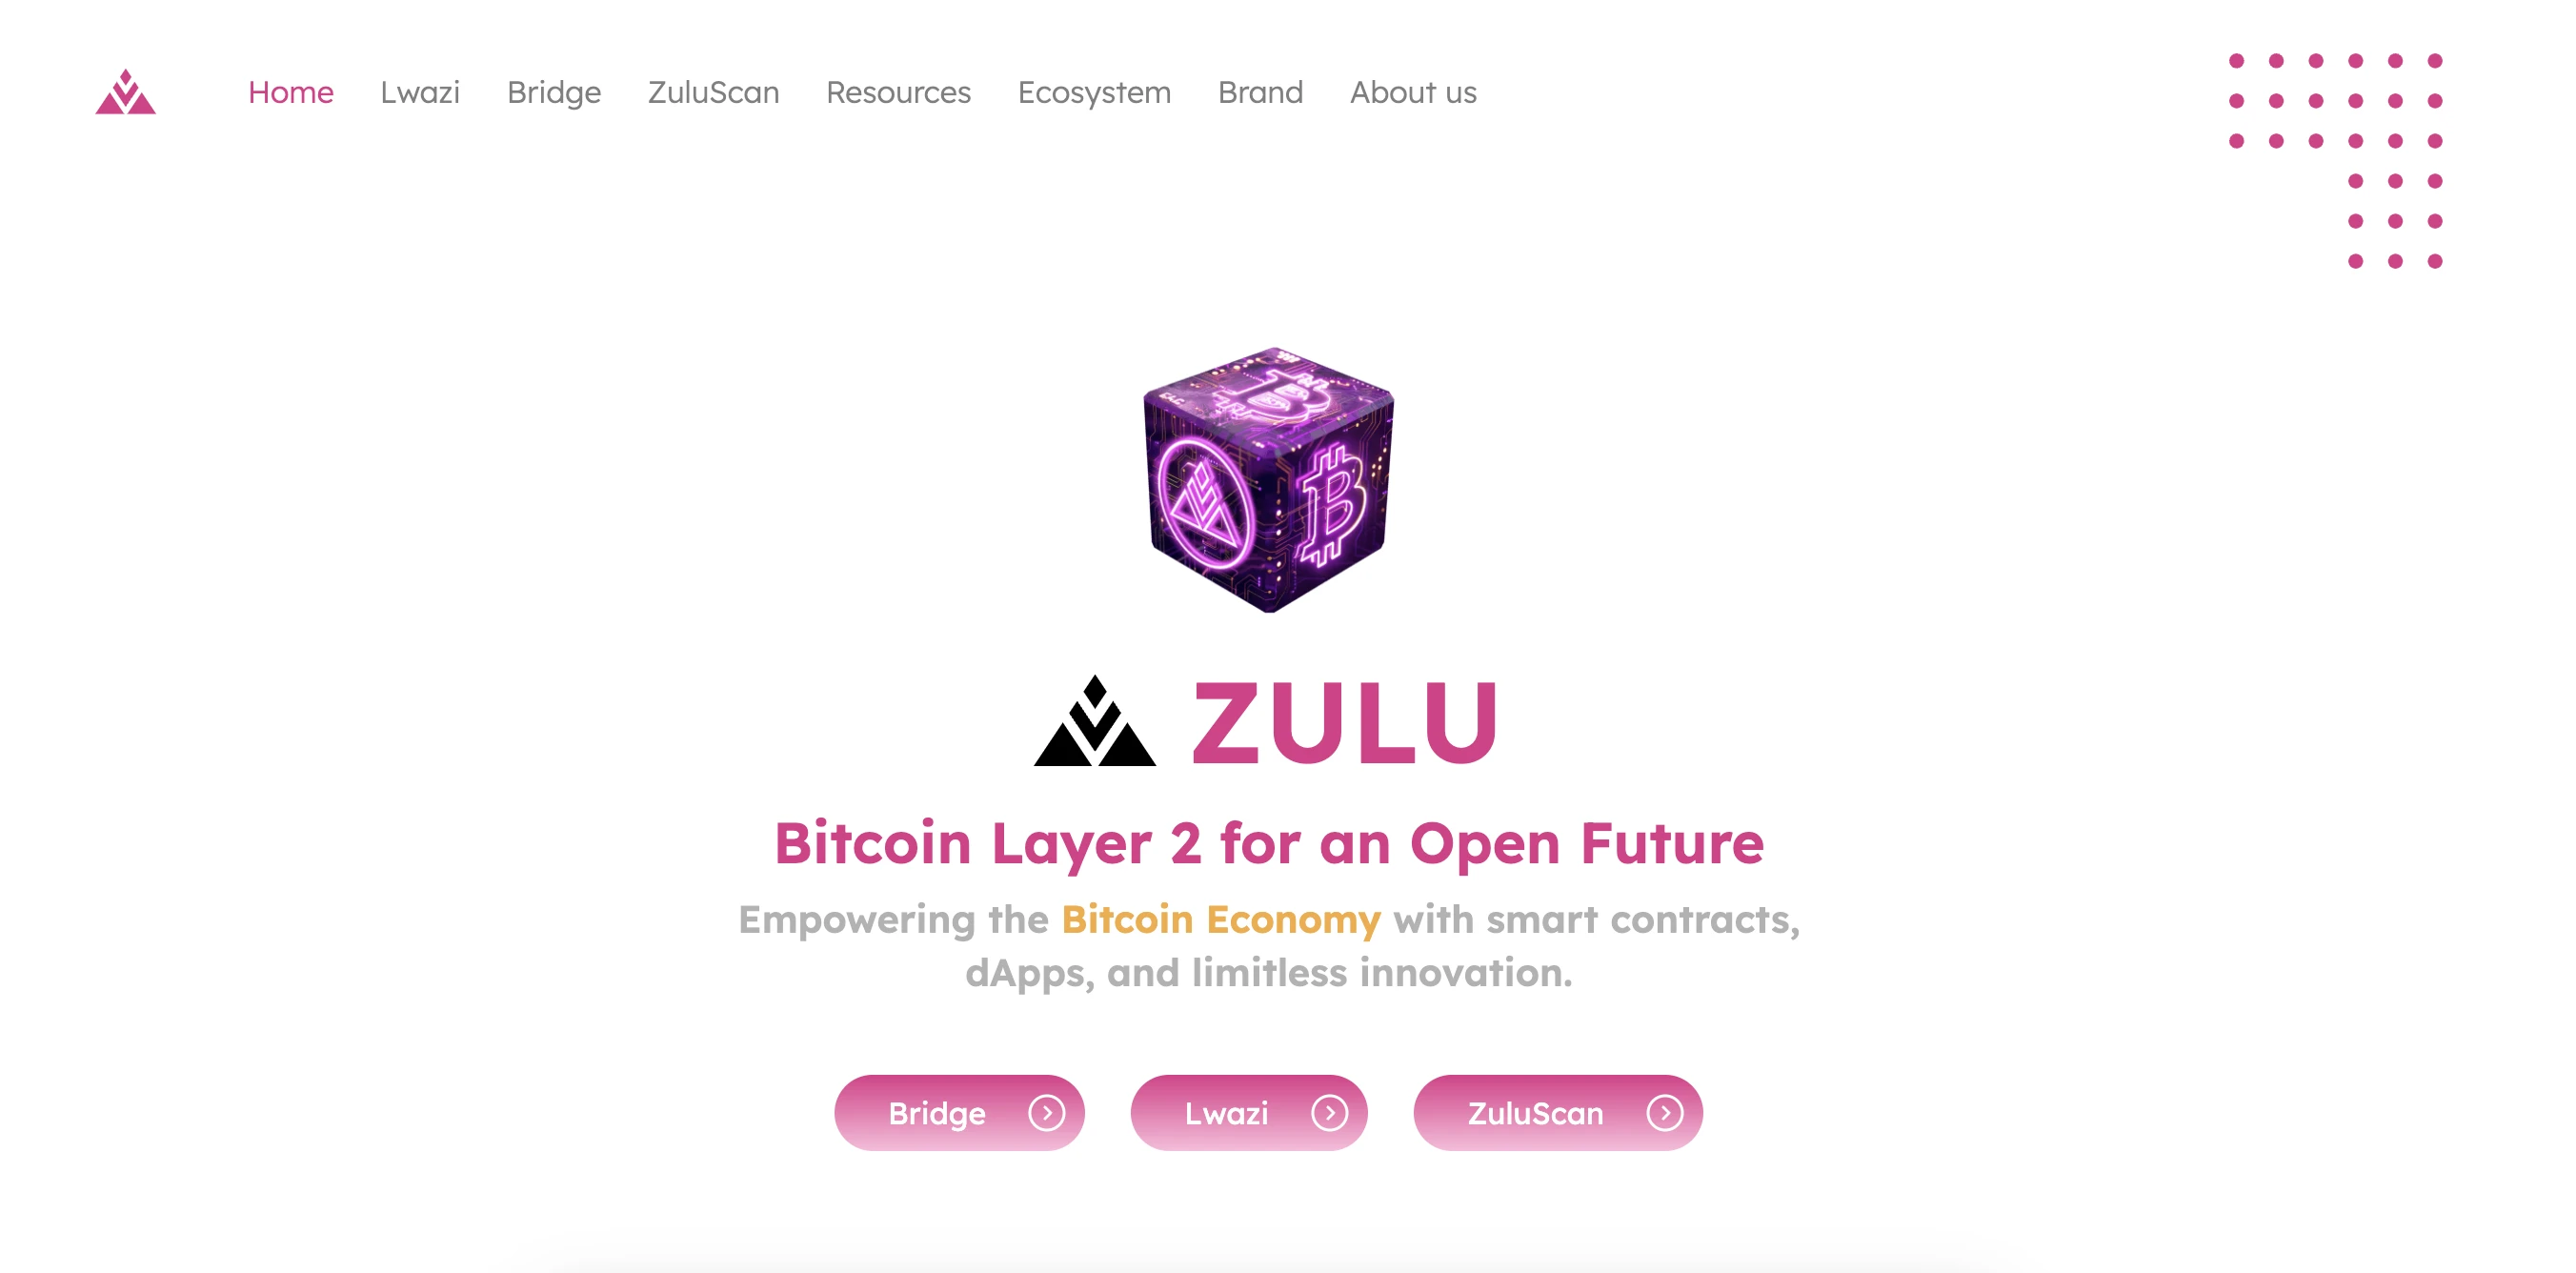 Zulu Network CTO への独占インタビュー: 「ビットコイン ネットワークにおける真の L2 拡張層となる」